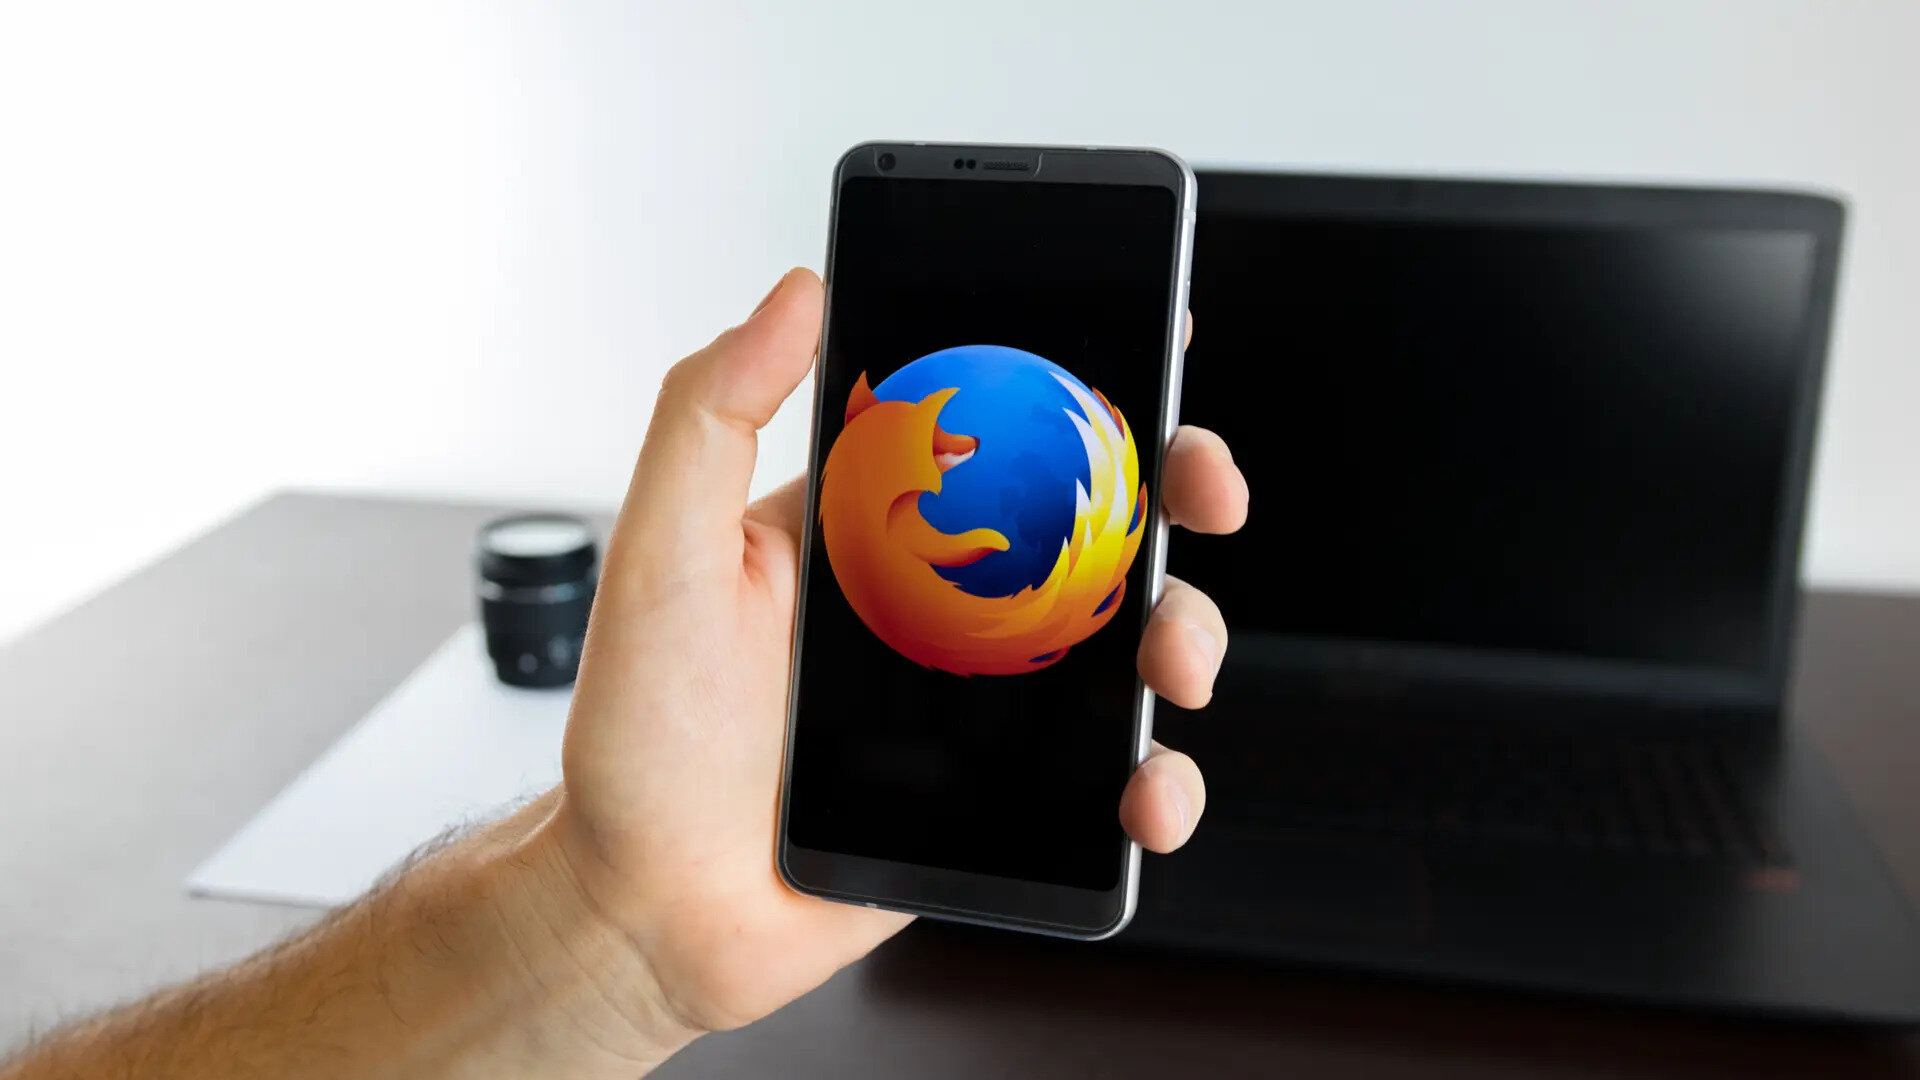 В браузере Firefox для Android появился Total Cookie Protection — инструмент для защиты от слежки